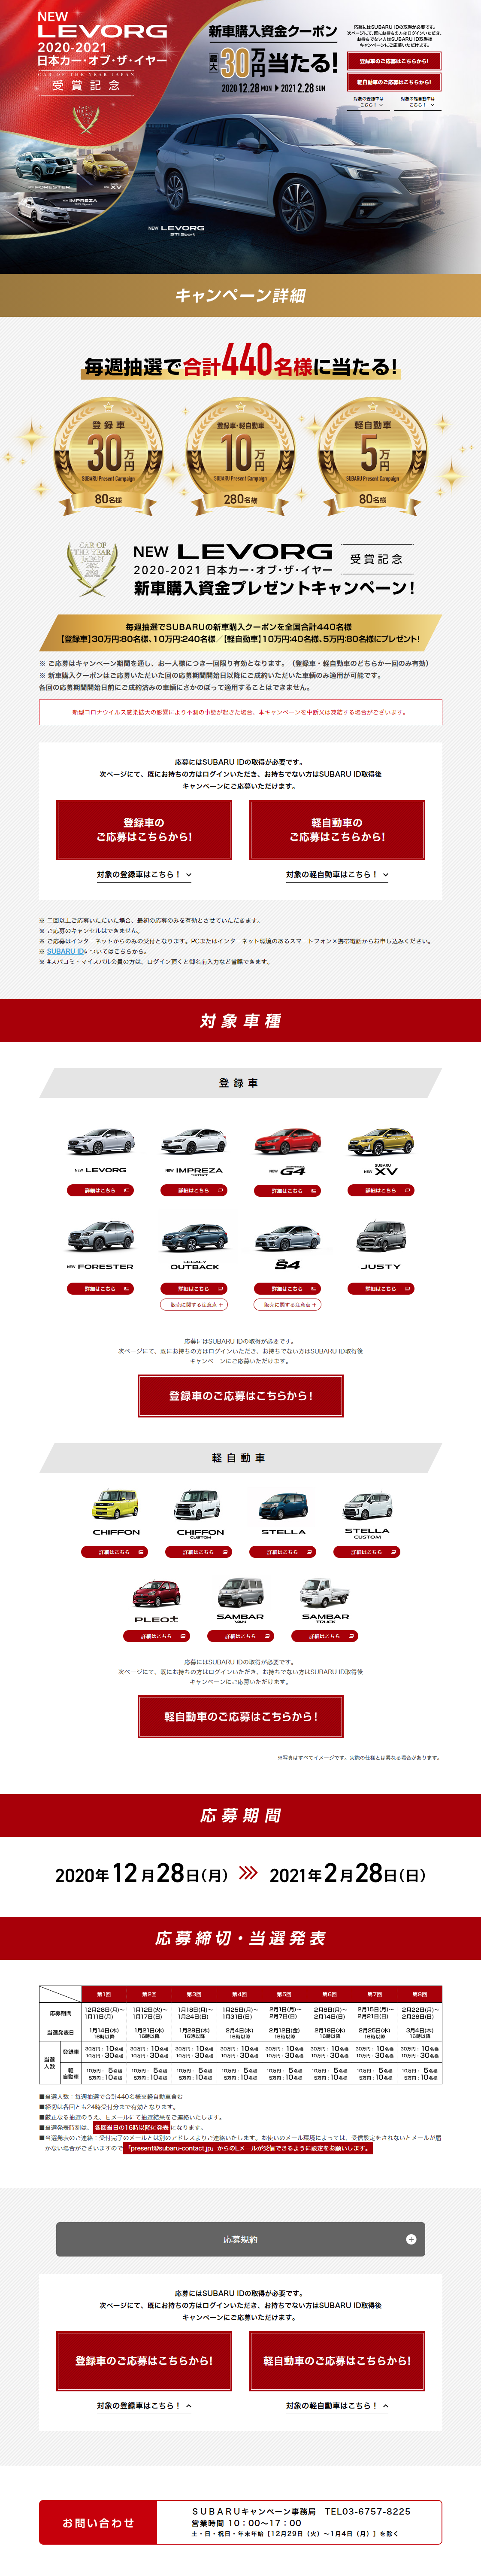 新型レヴォーグ 2020-2021 日本カー・オブ・ザ・イヤー受賞記念 新車購入資金プレゼントキャンペーン!_pc_1